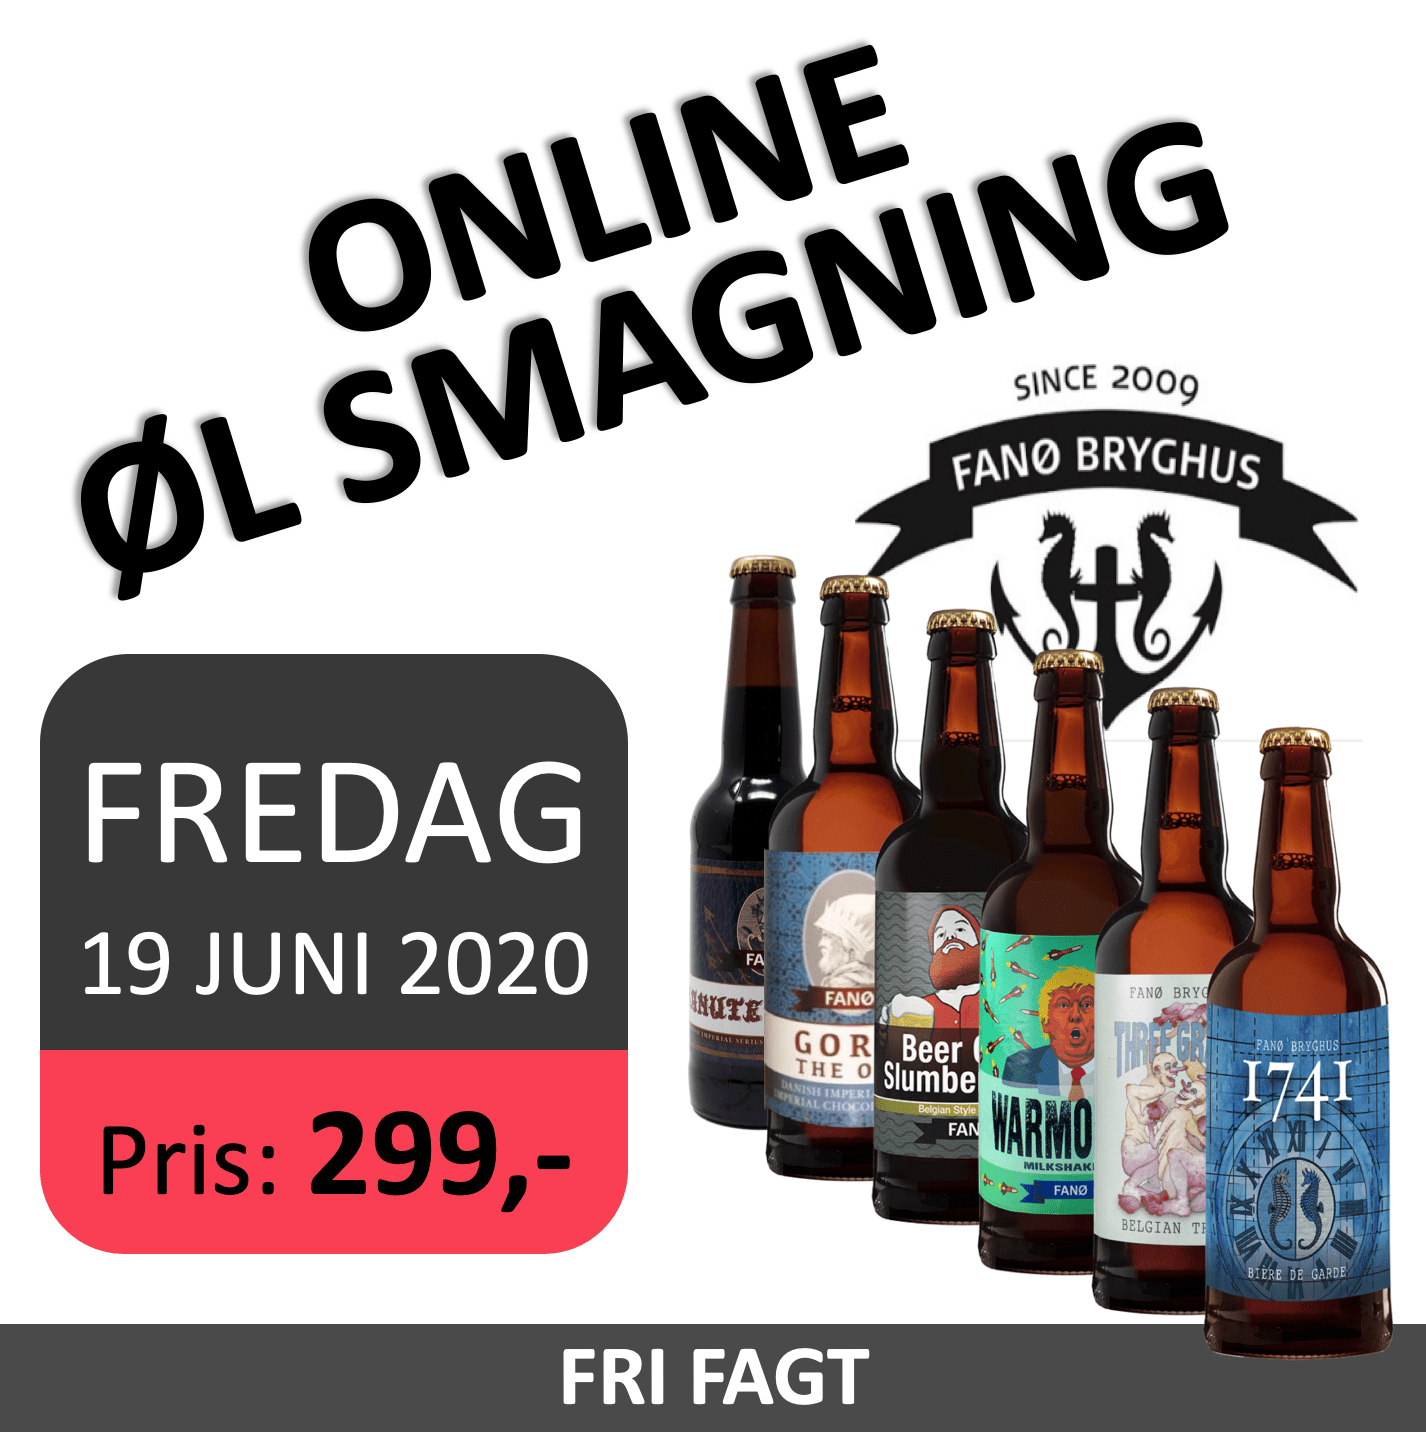 Fanø Bryghus online øl smagning